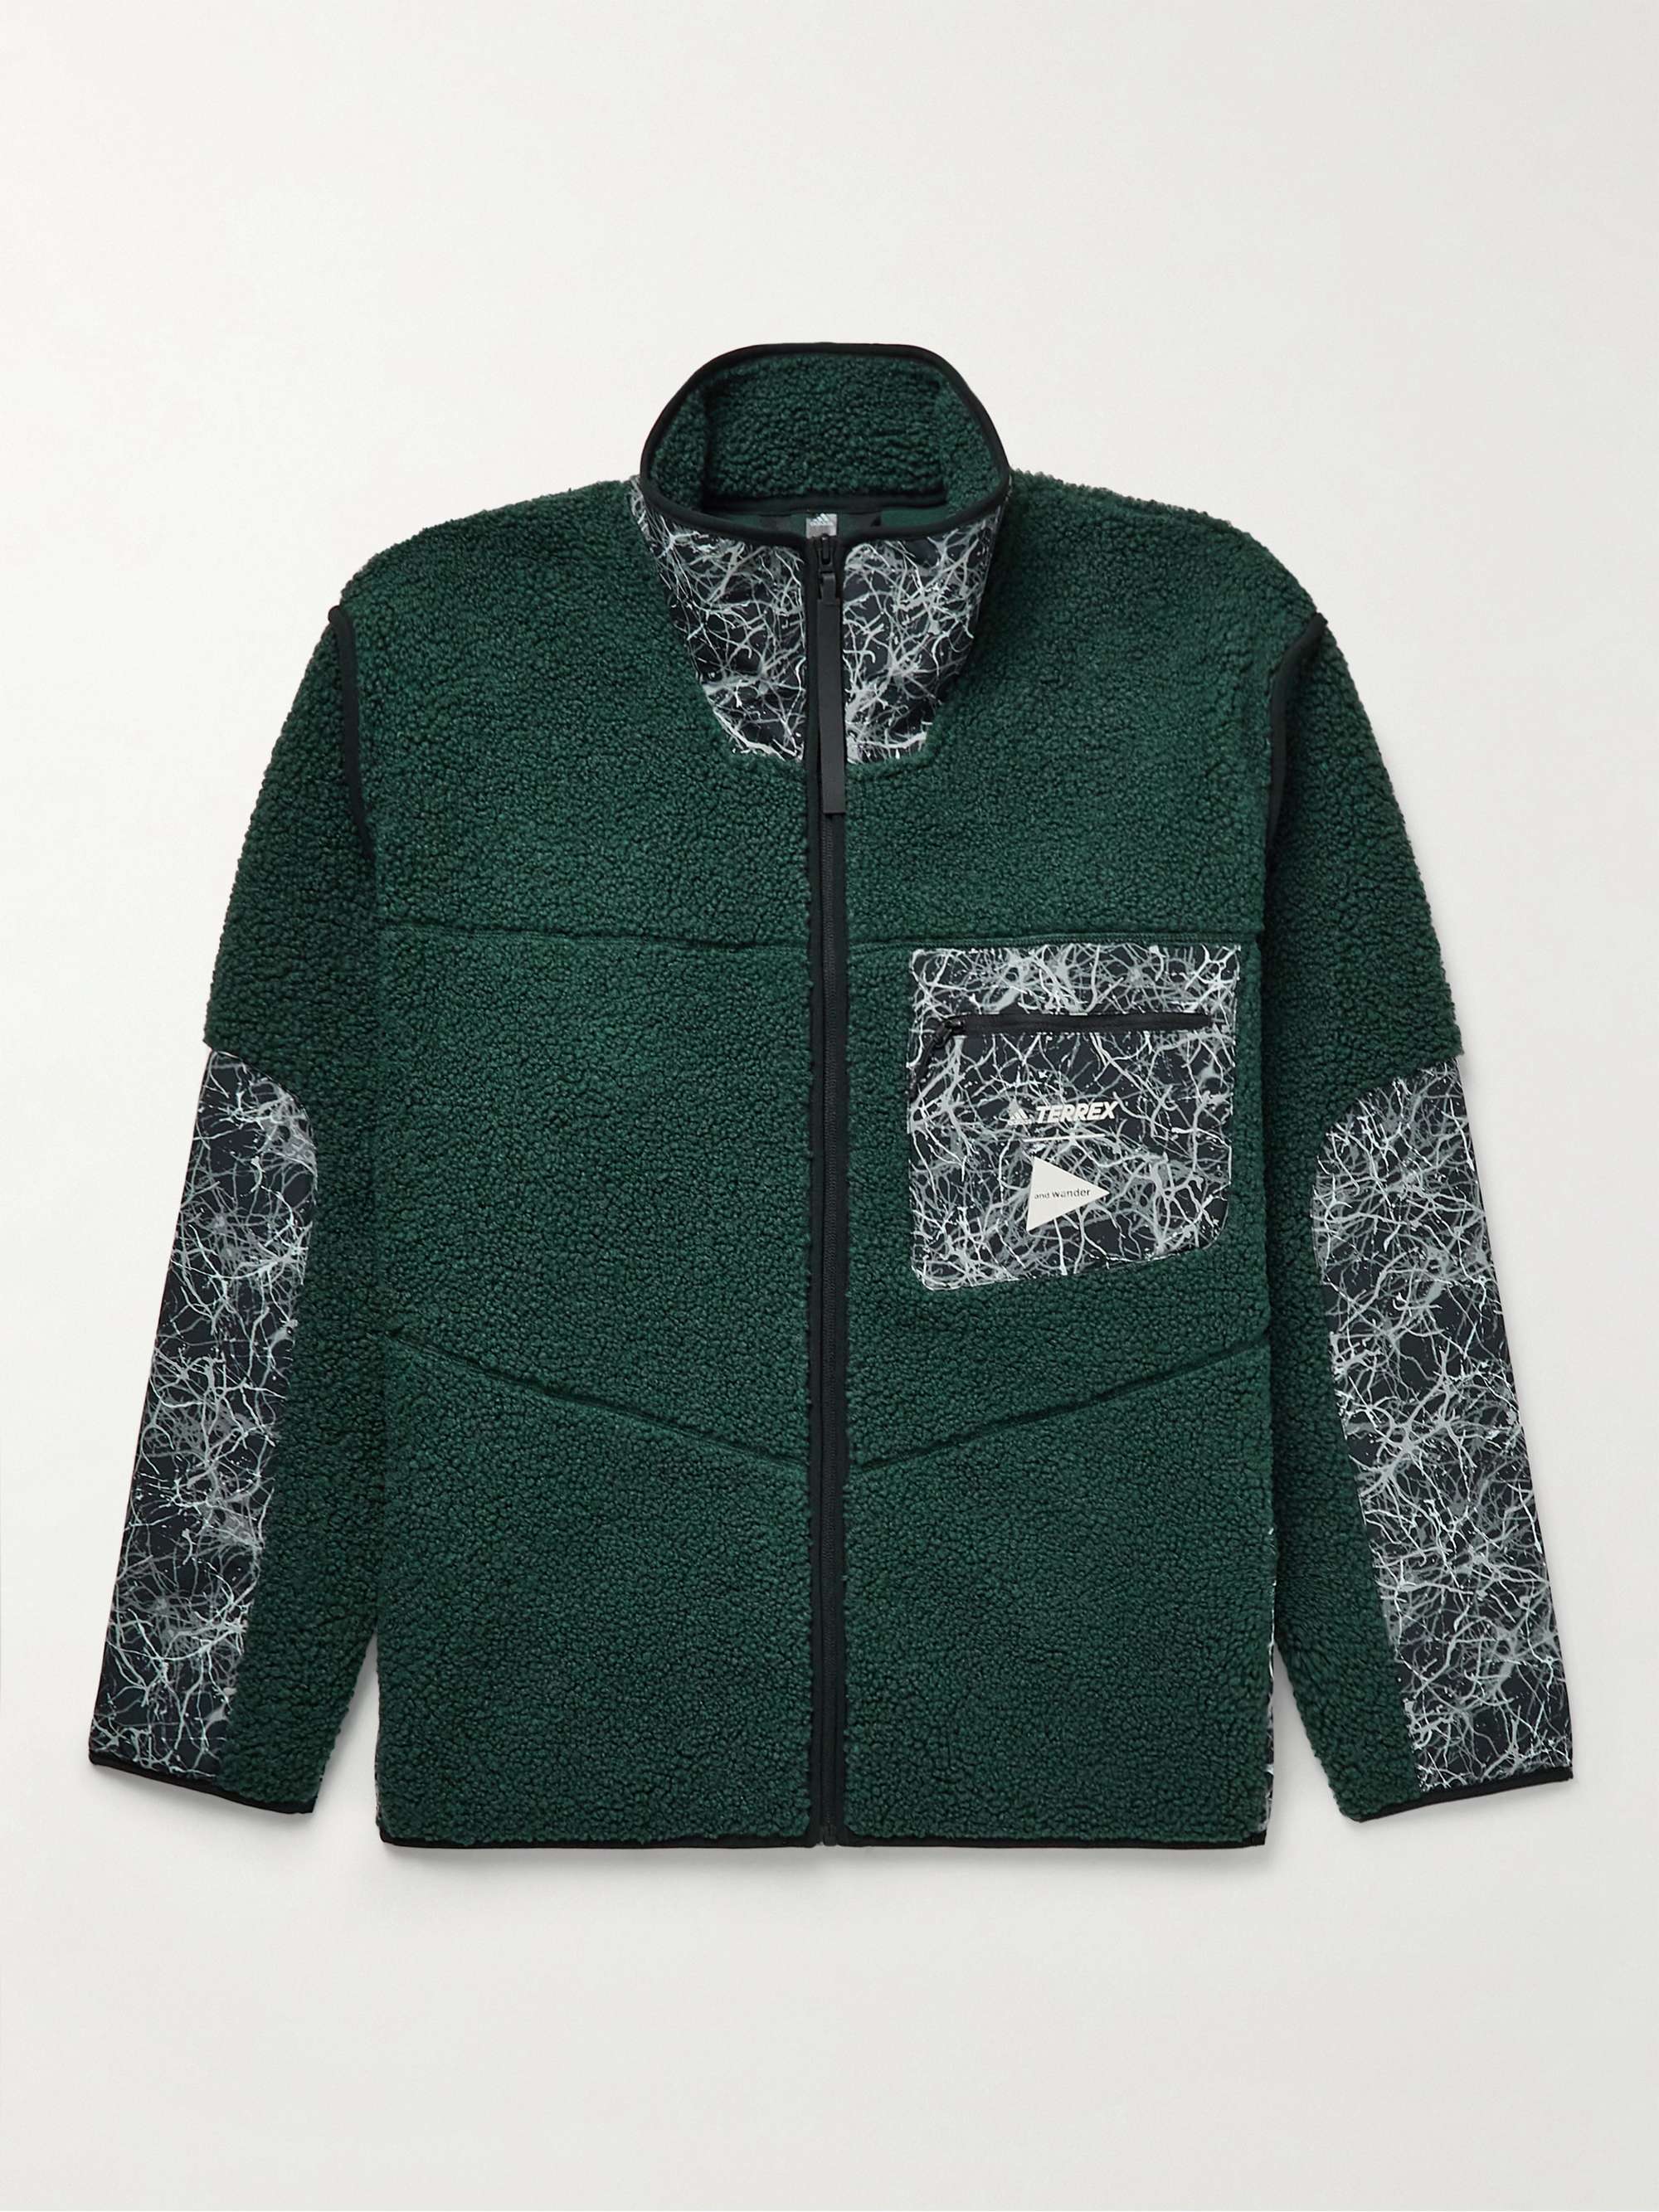 ADIDAS CONSORTIUM + And Wander Cutout Shell-Trimmed Fleece Jacket | MR  PORTER